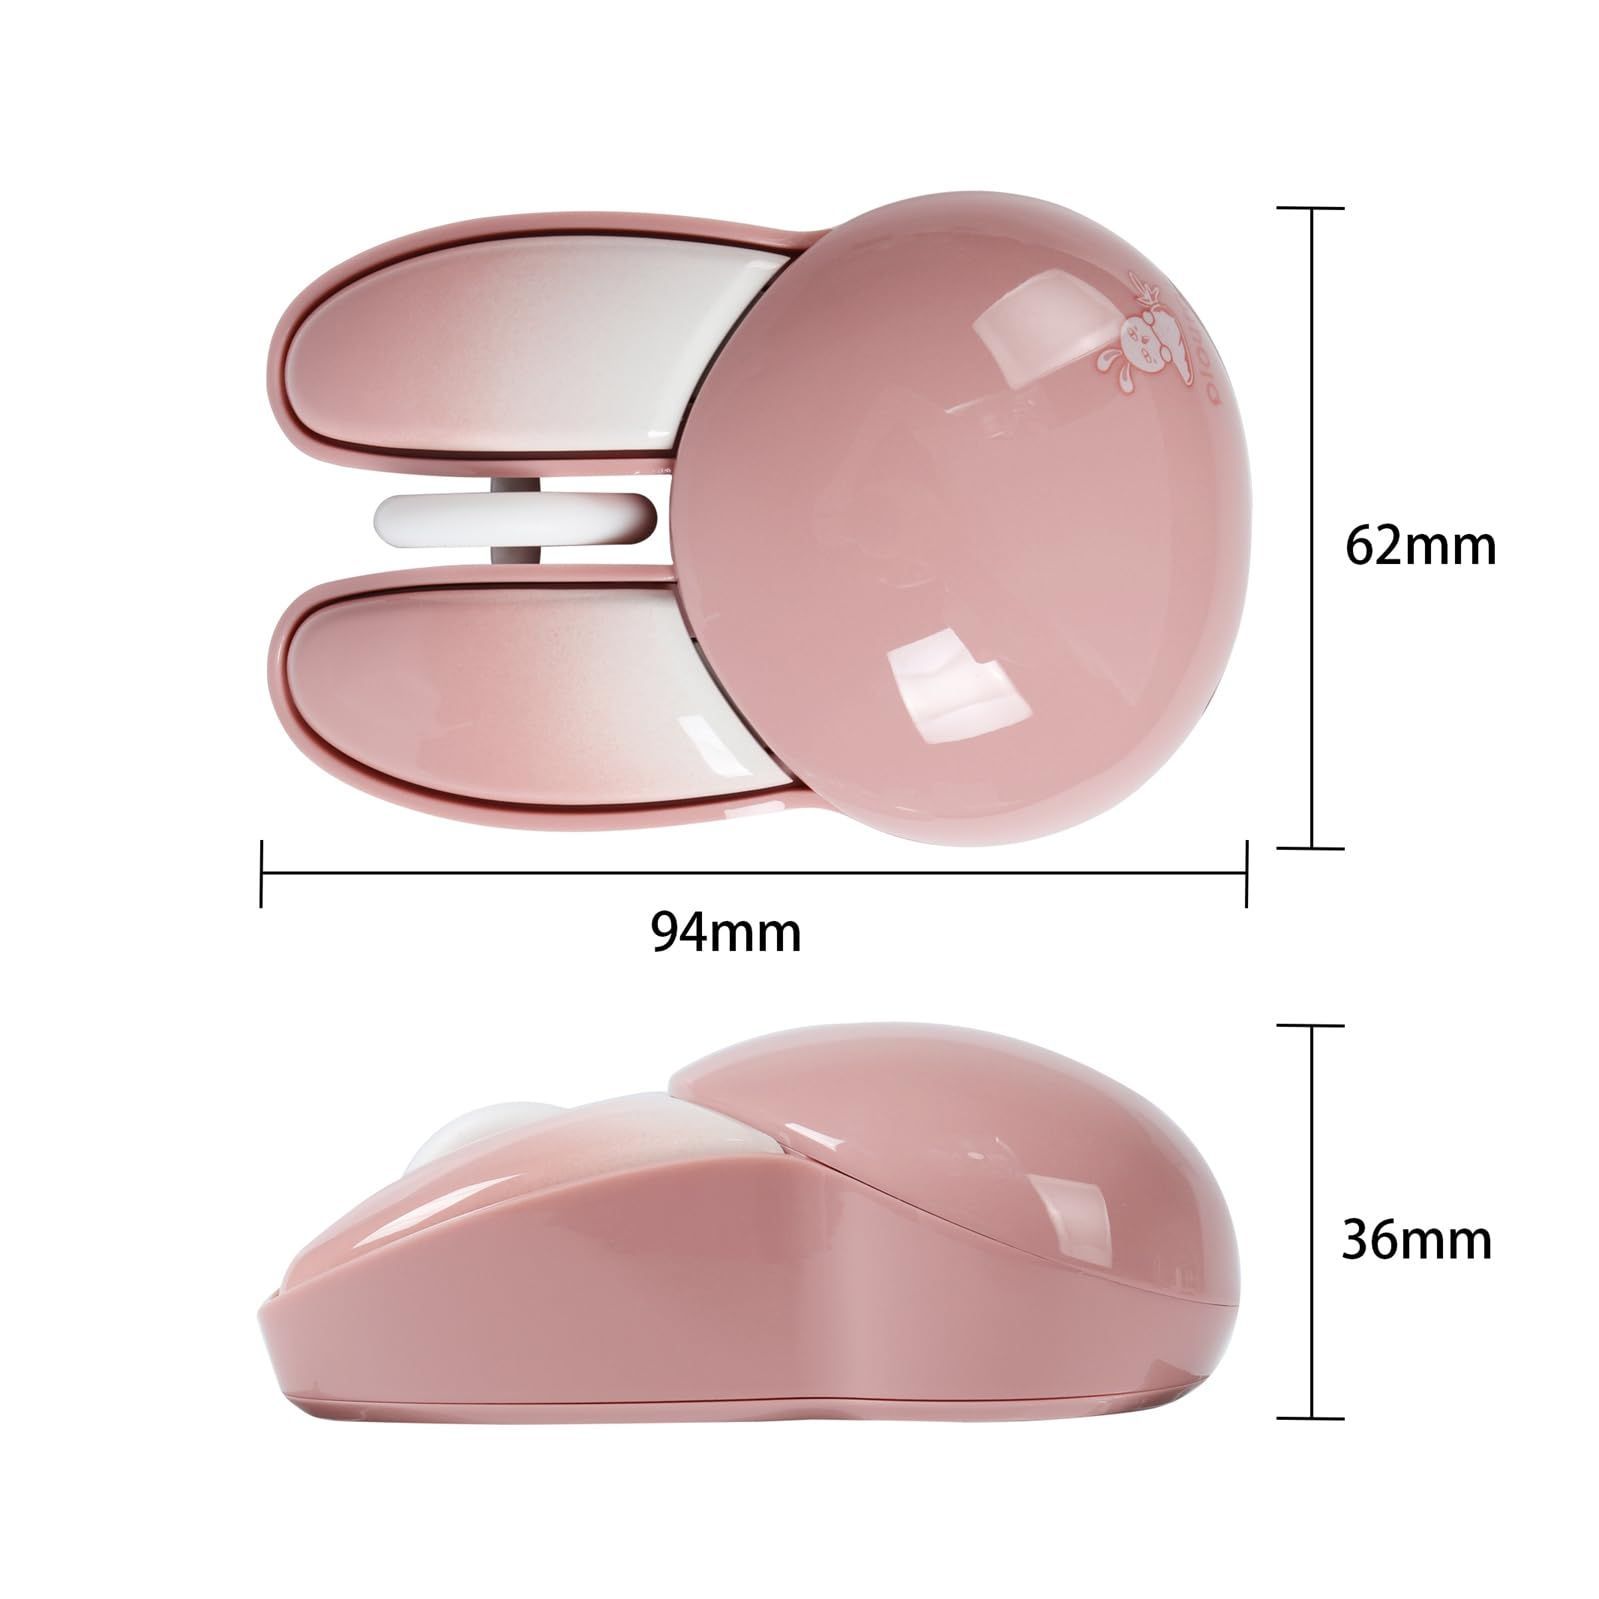 DIWOSHE 2.4Ghzワイヤレスマウス かわいいウサギの耳のデザイン USB無線マウス 静音 電池式 光学式 小型 軽量 キャラクター